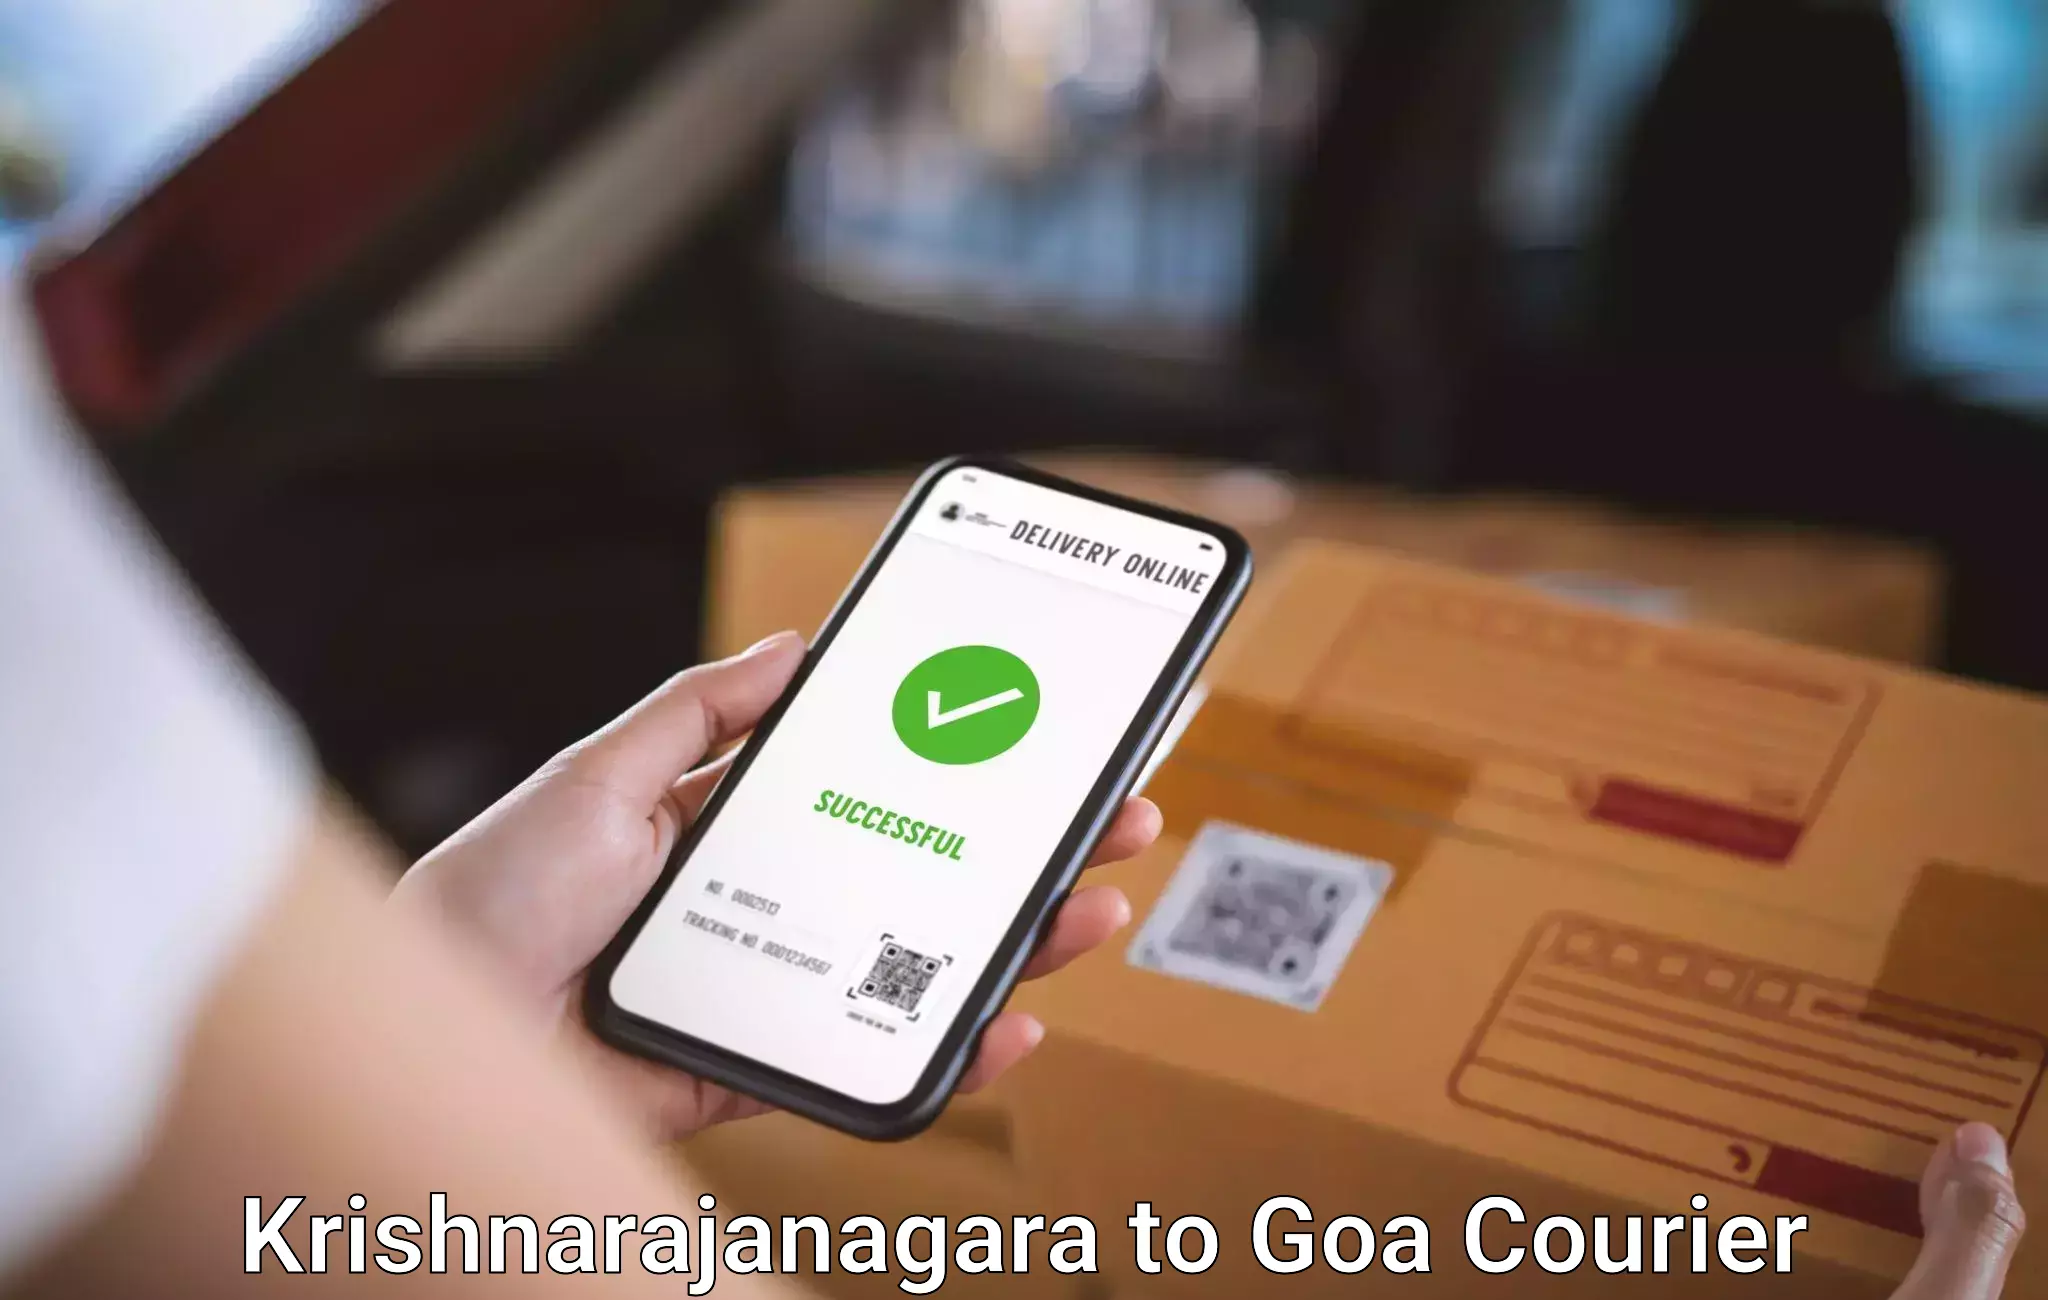 Luggage shipment processing Krishnarajanagara to NIT Goa